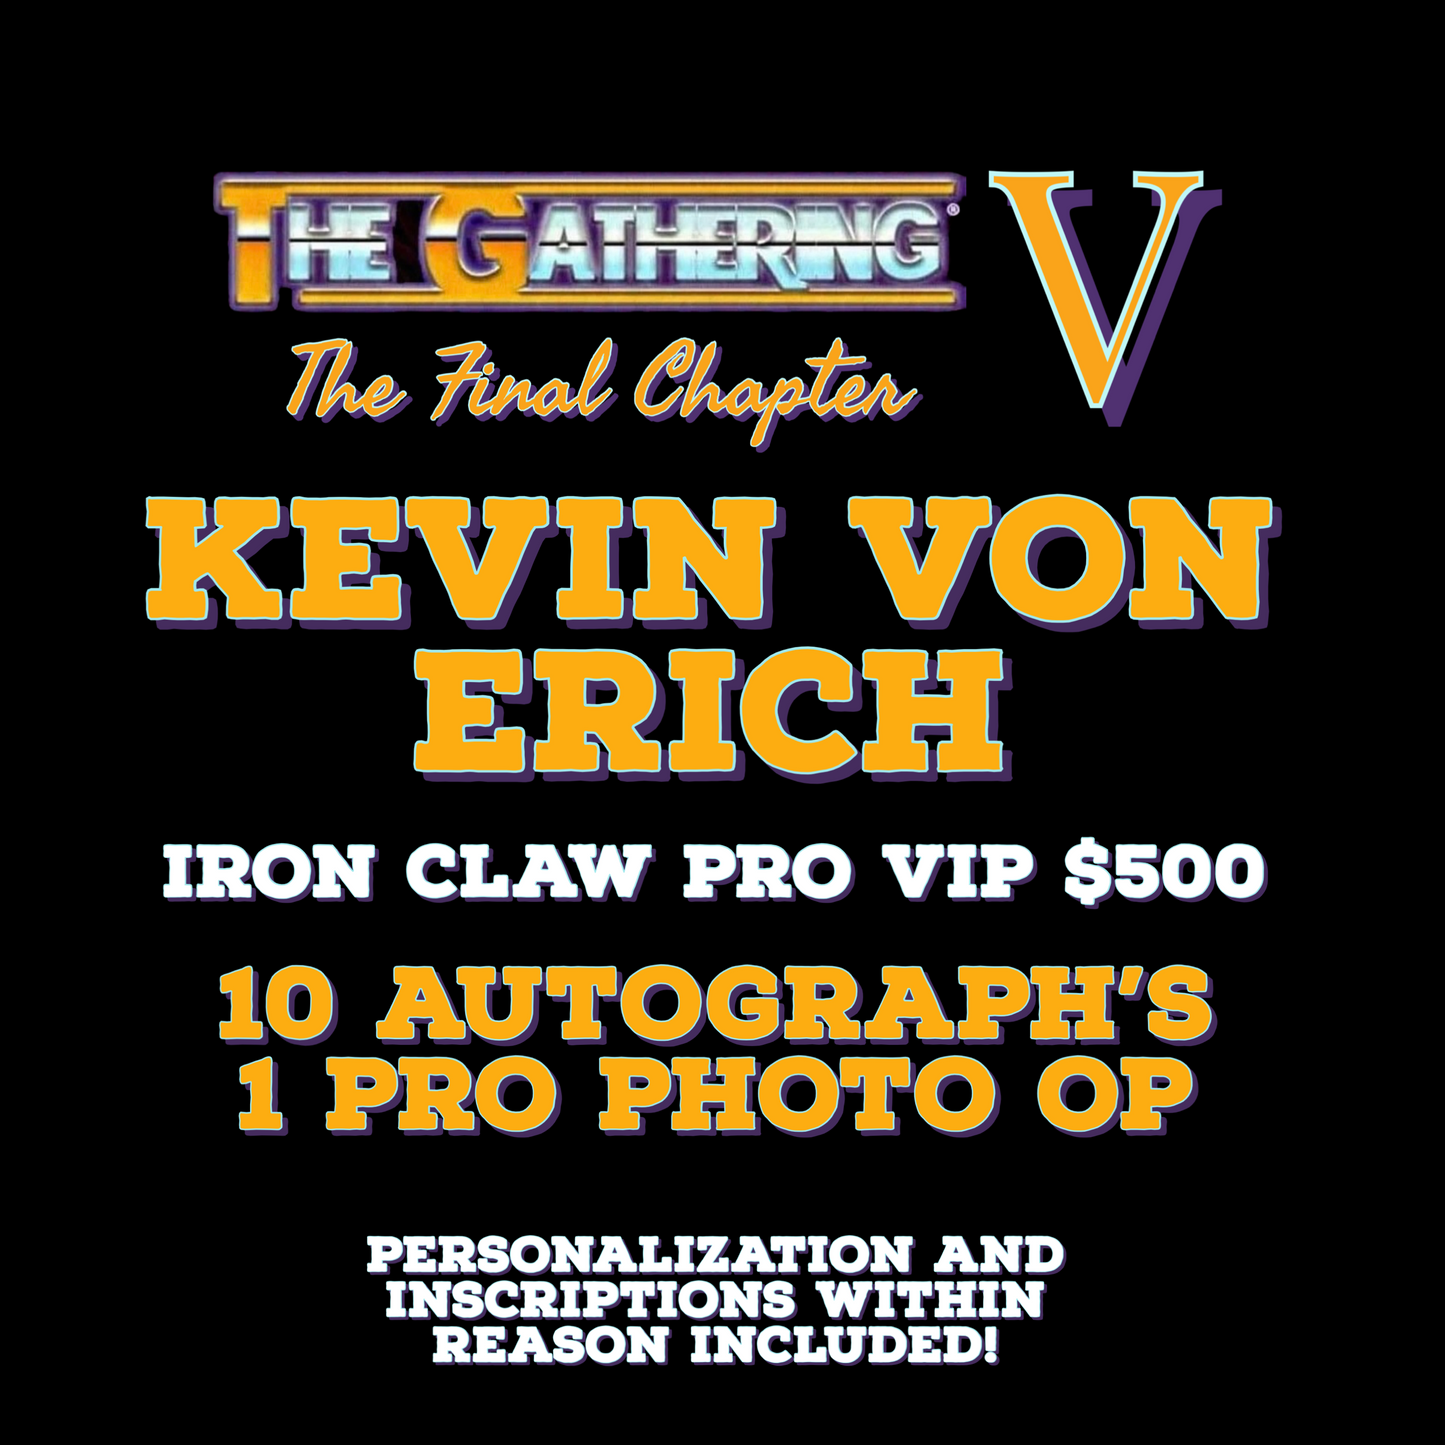 Kevin Von Erich IRON CLAW PRO VIP